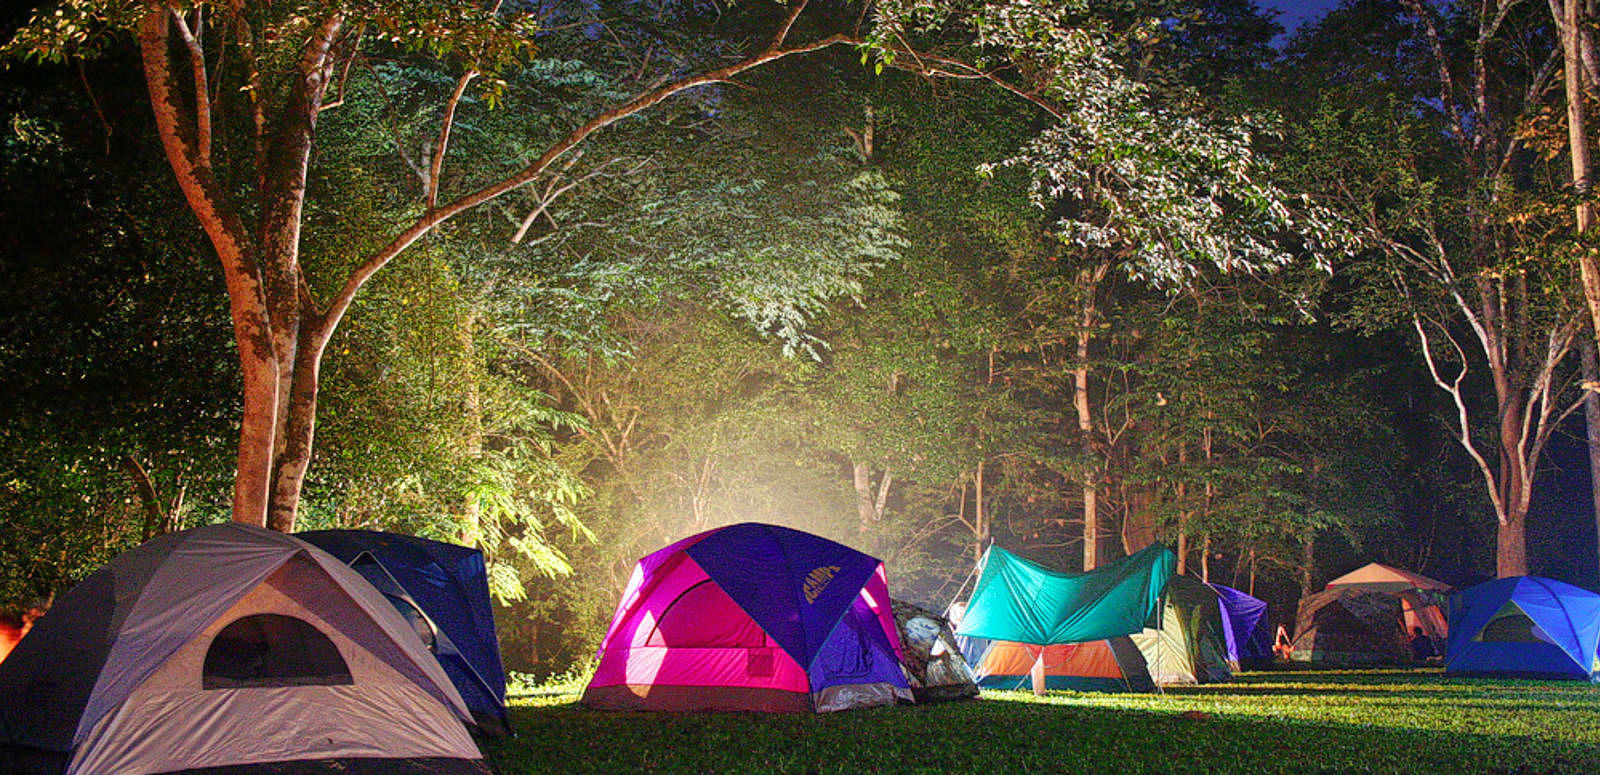 Find a camp. Палаточный лагерь. Палатка на природе. Лагерь с палатками. Палаточный лагерь для детей.